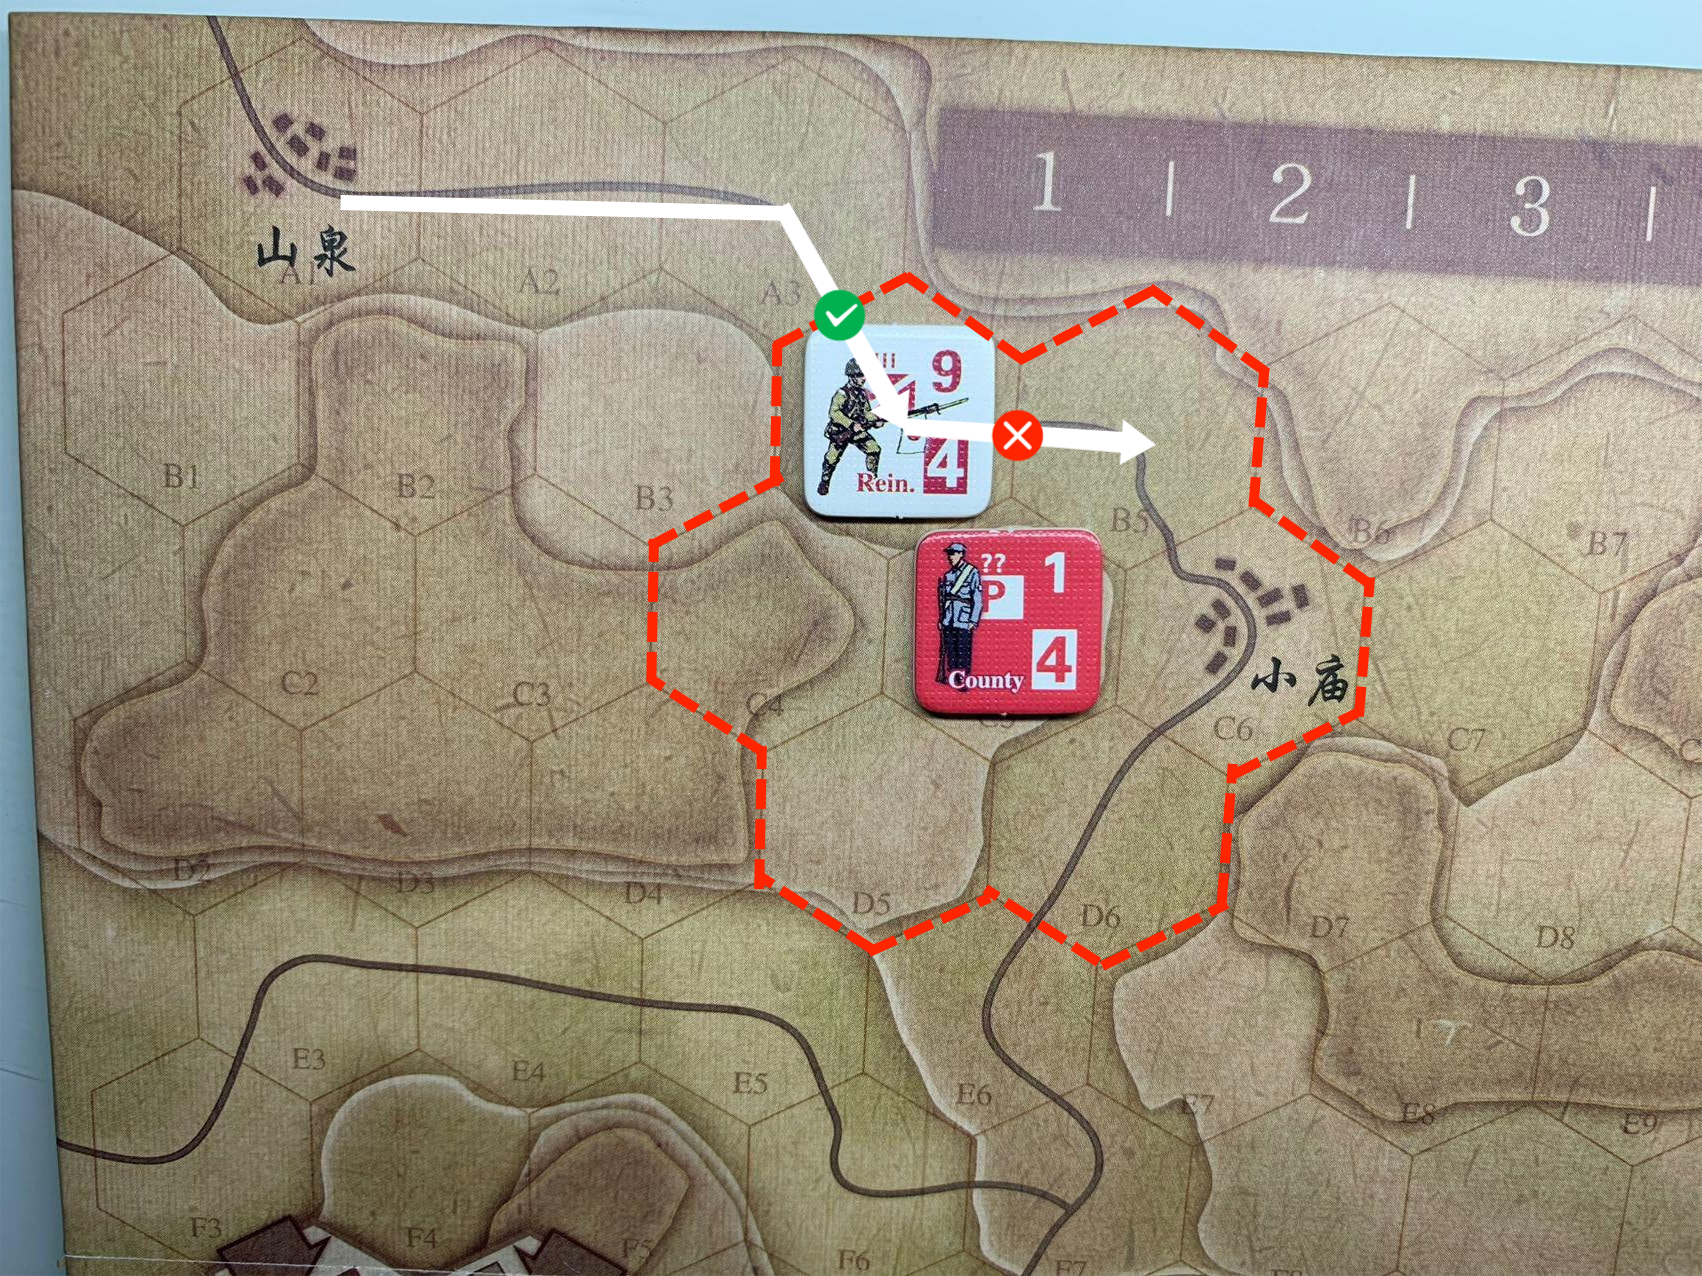 实际移动时，当执行到第三步，进入B4格时，由于进入了共军游击队的控制区，立即停止移动